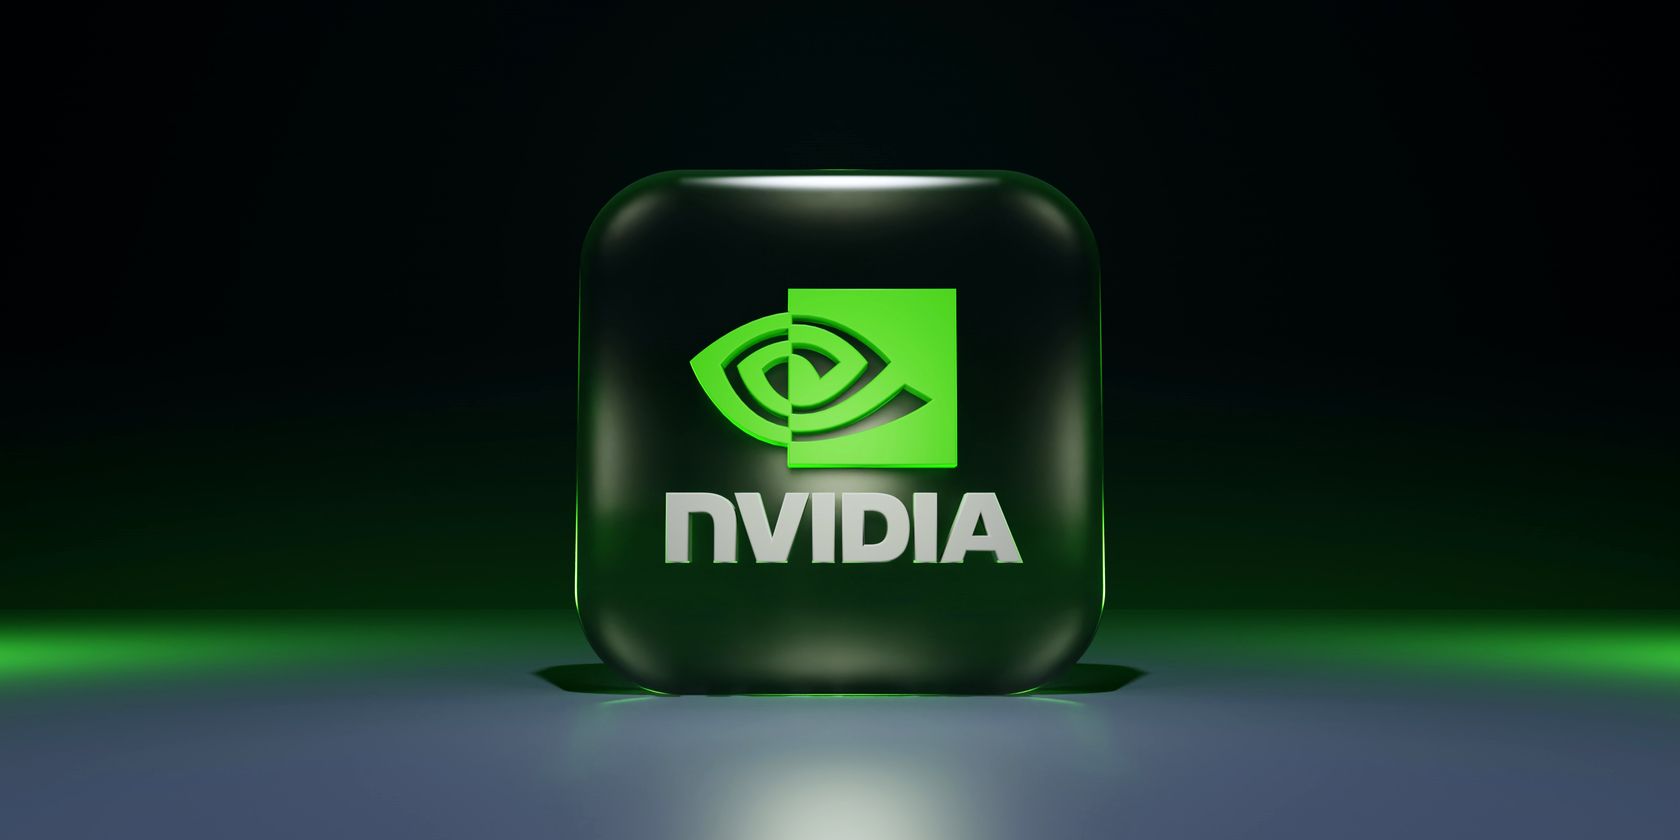 nvidia logo on block feature